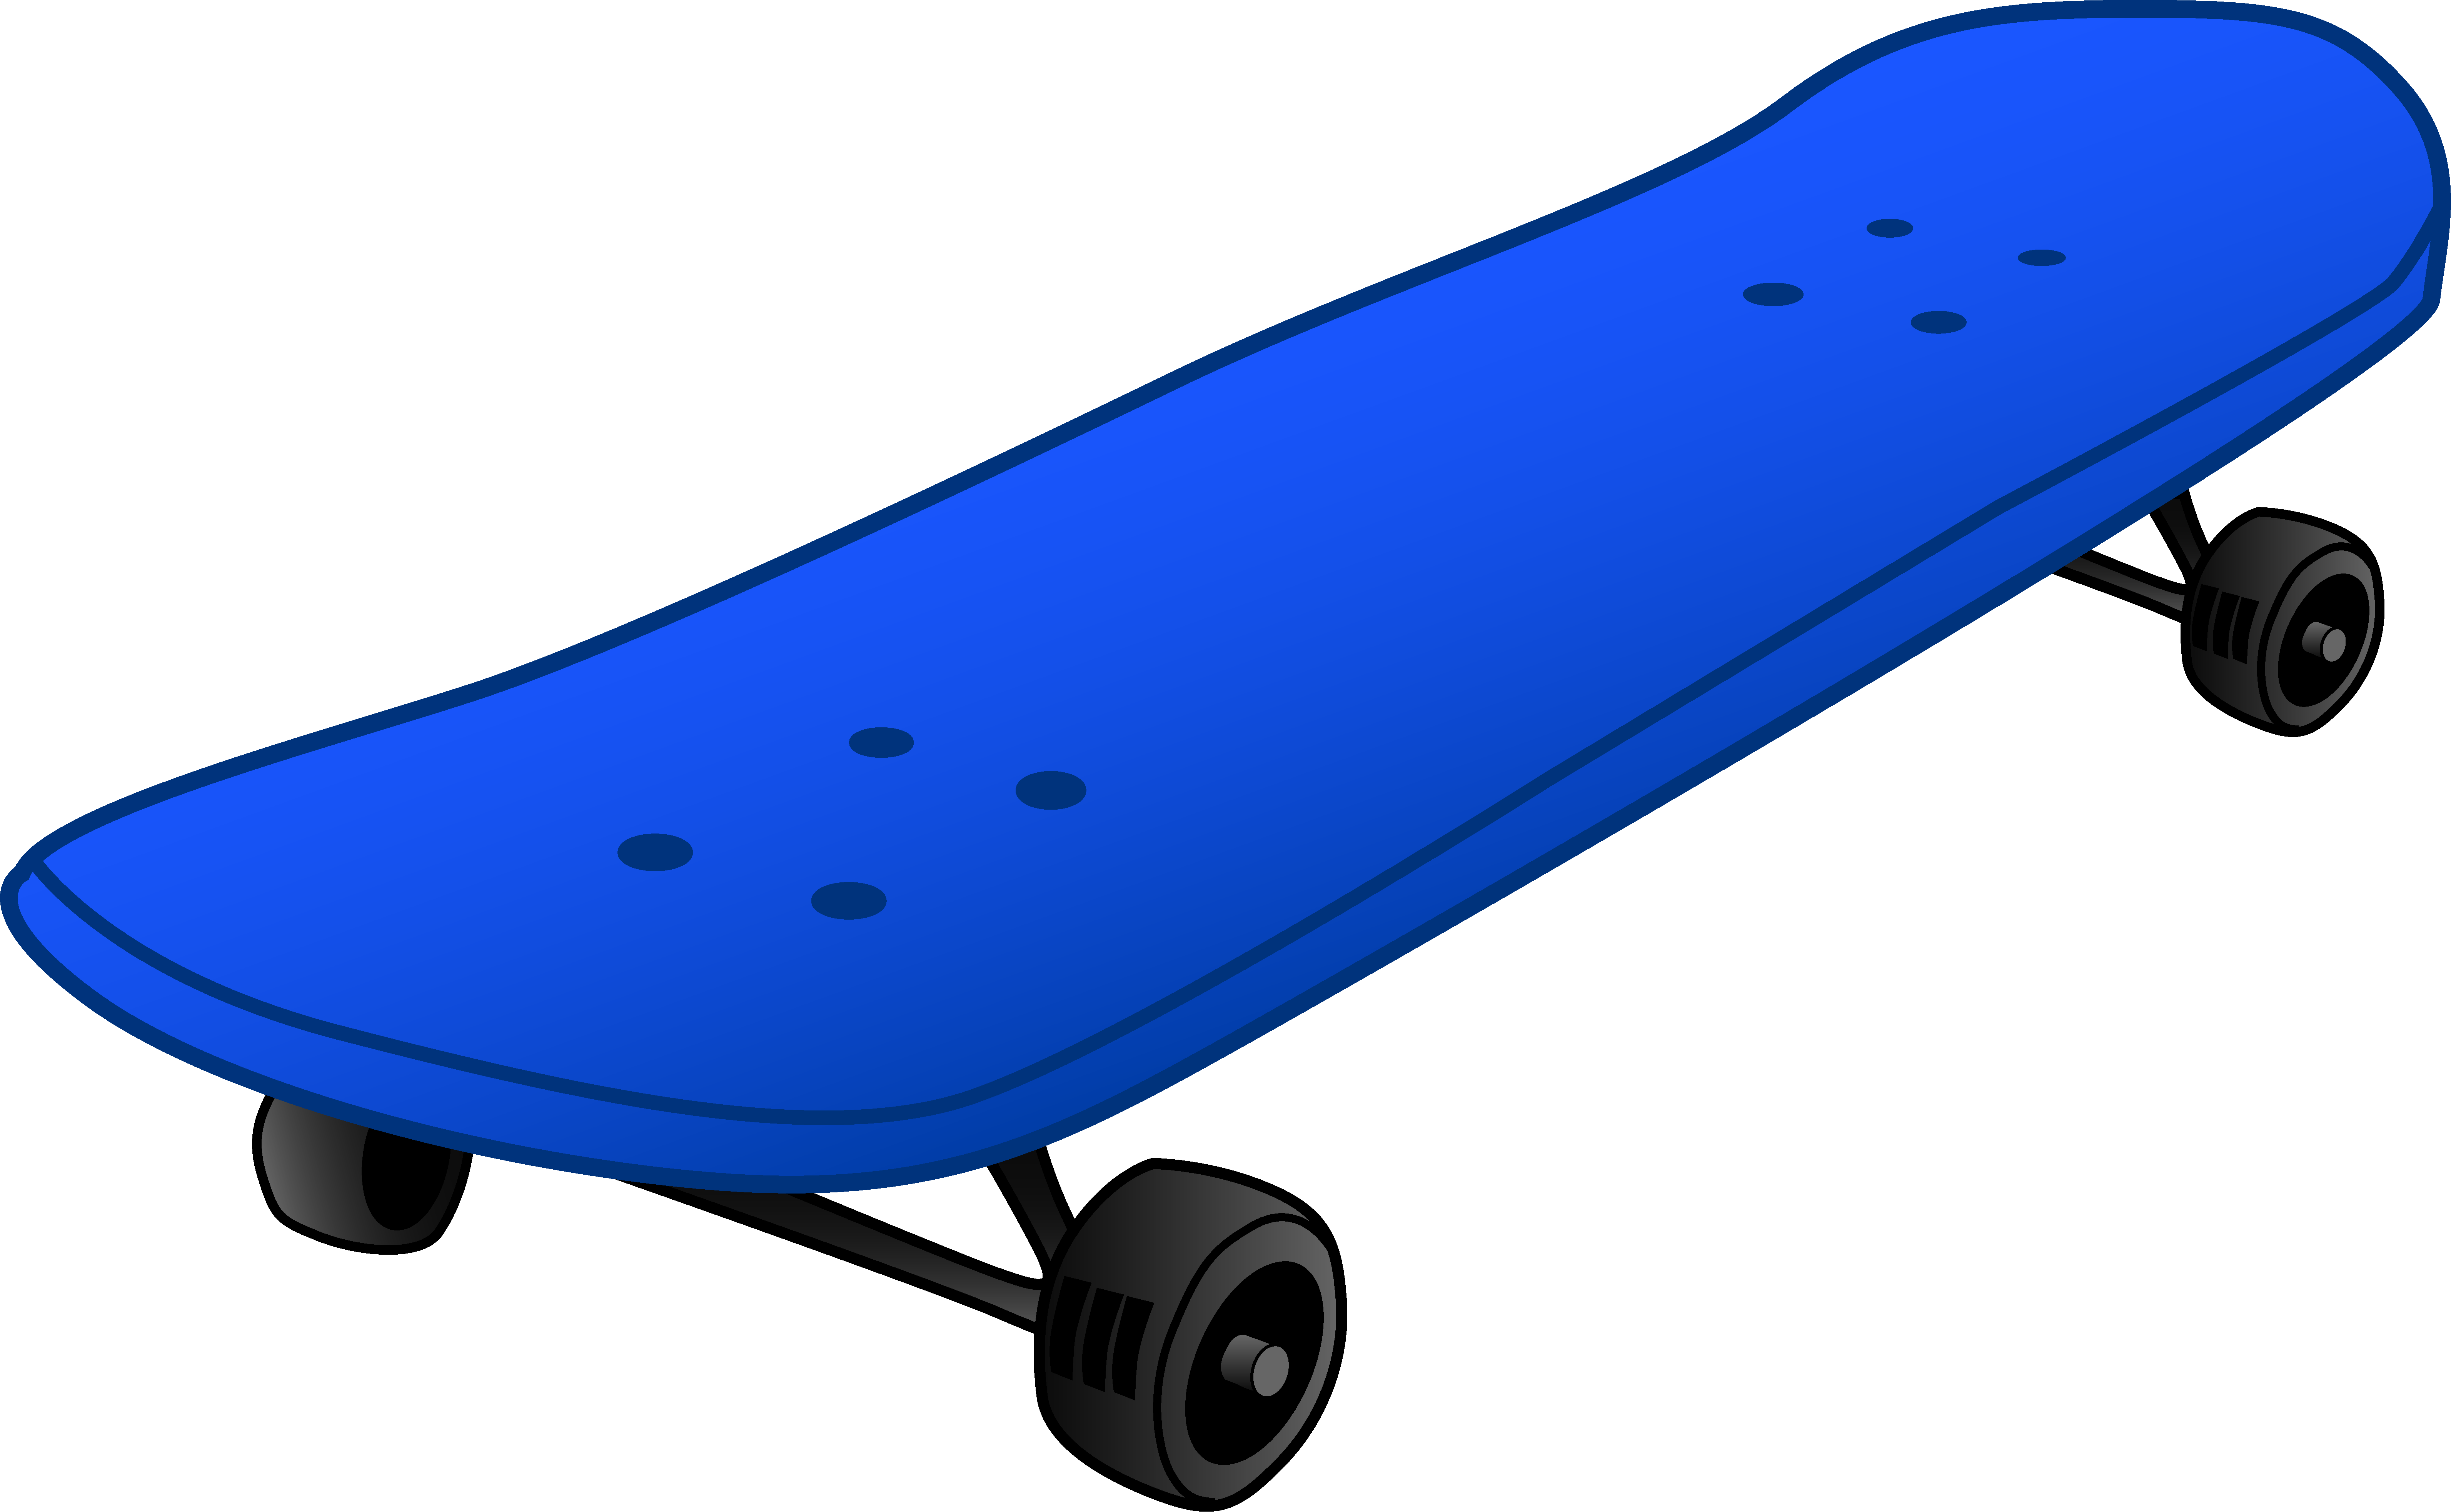 Boy Doing Skateboard Jump - C